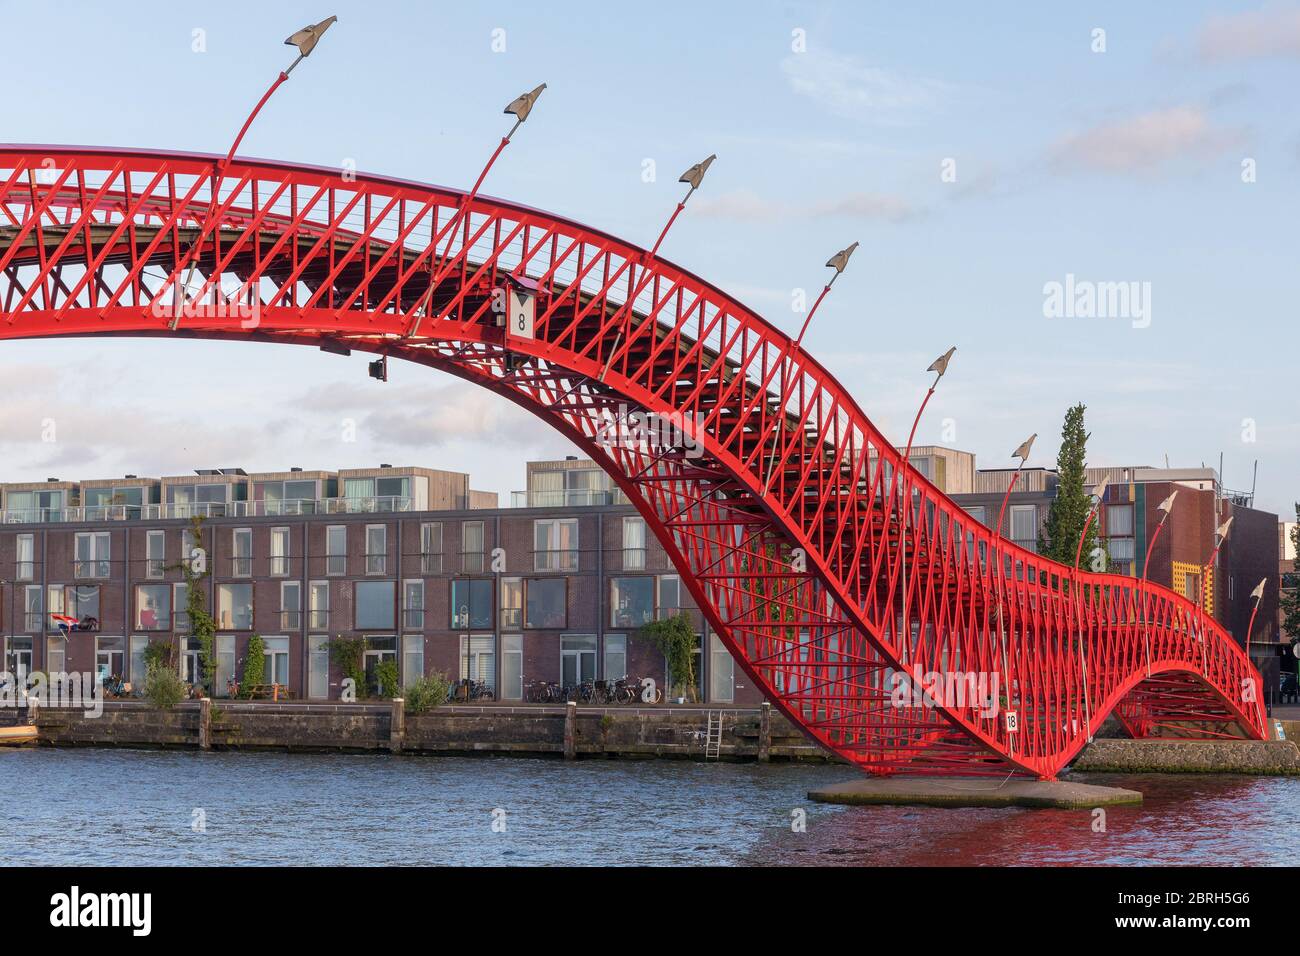 Site d'intérêt du pont Red Pyton à Amsterdam, pays-Bas Banque D'Images